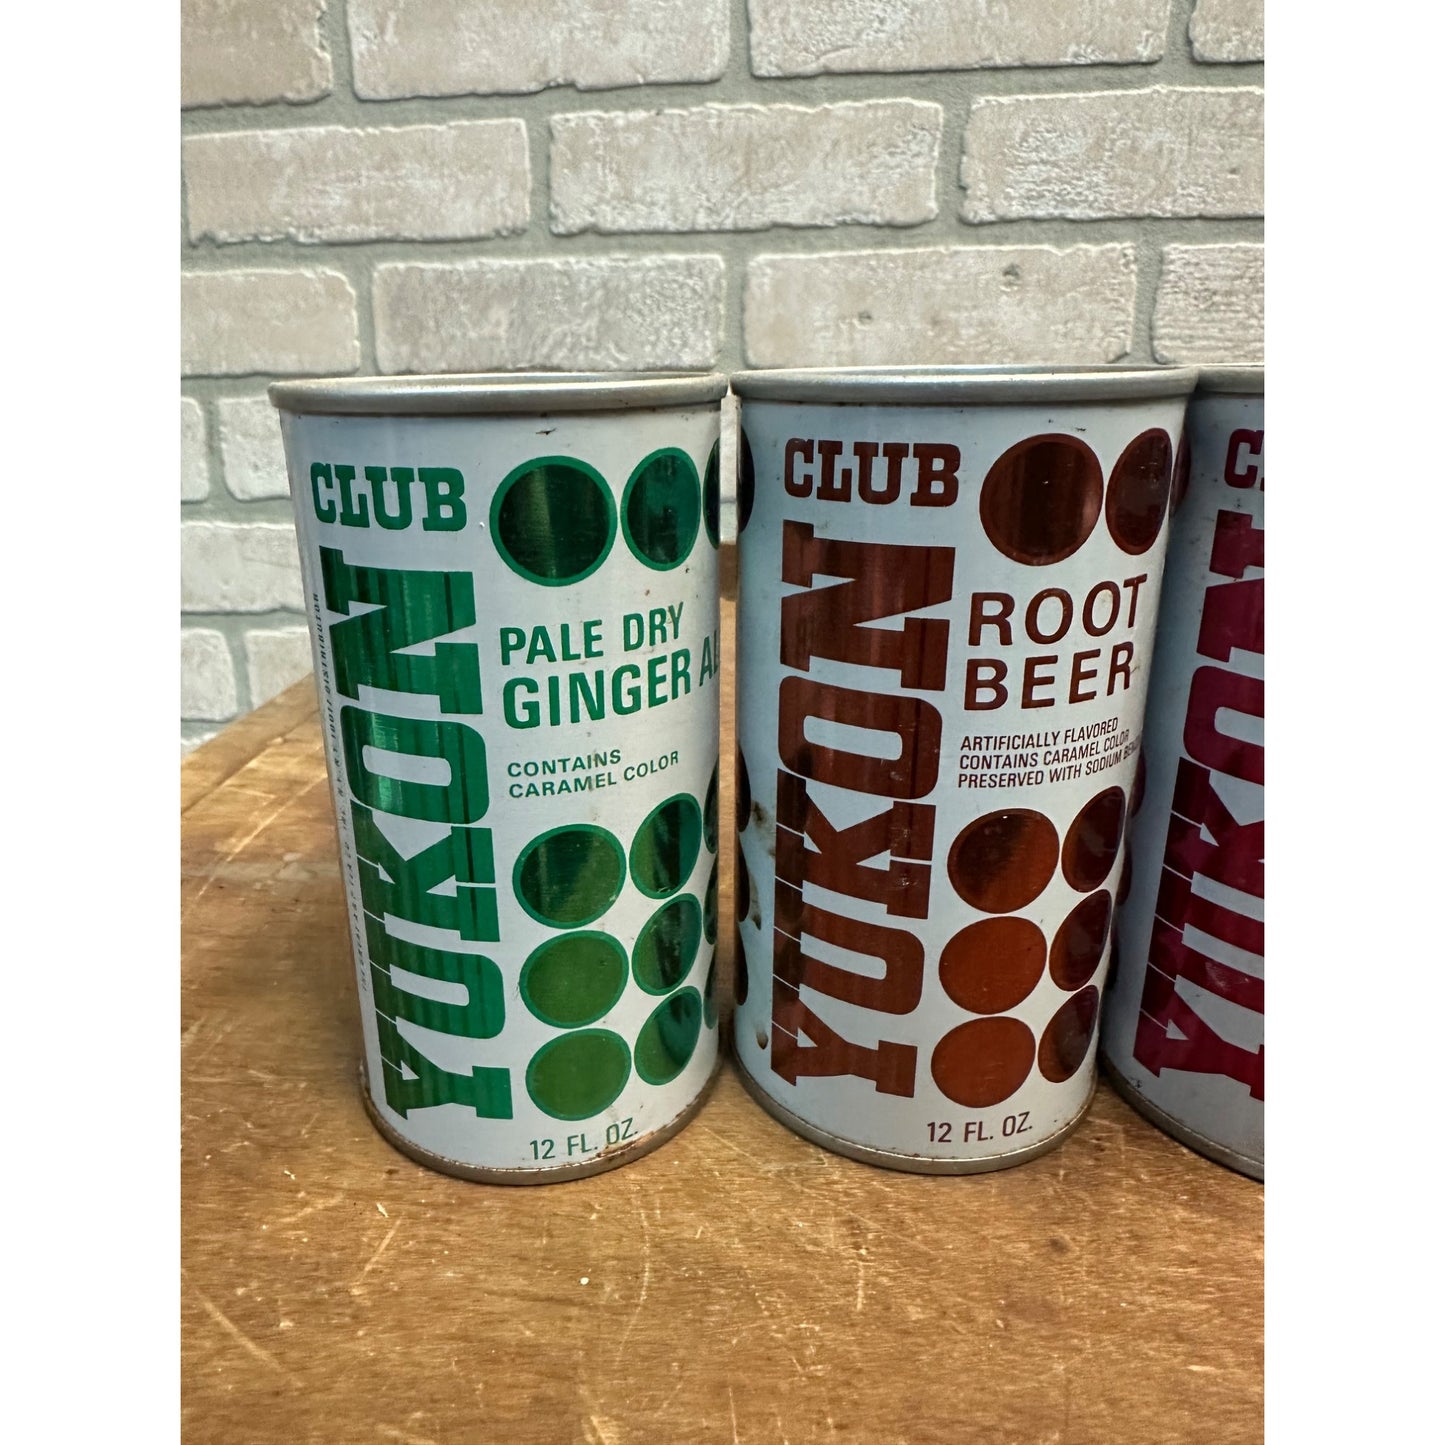 Vintage Yukon Club Soda Pop Cans (4) Orange Cherry Root Beer Steel Pull Tab Flat Top